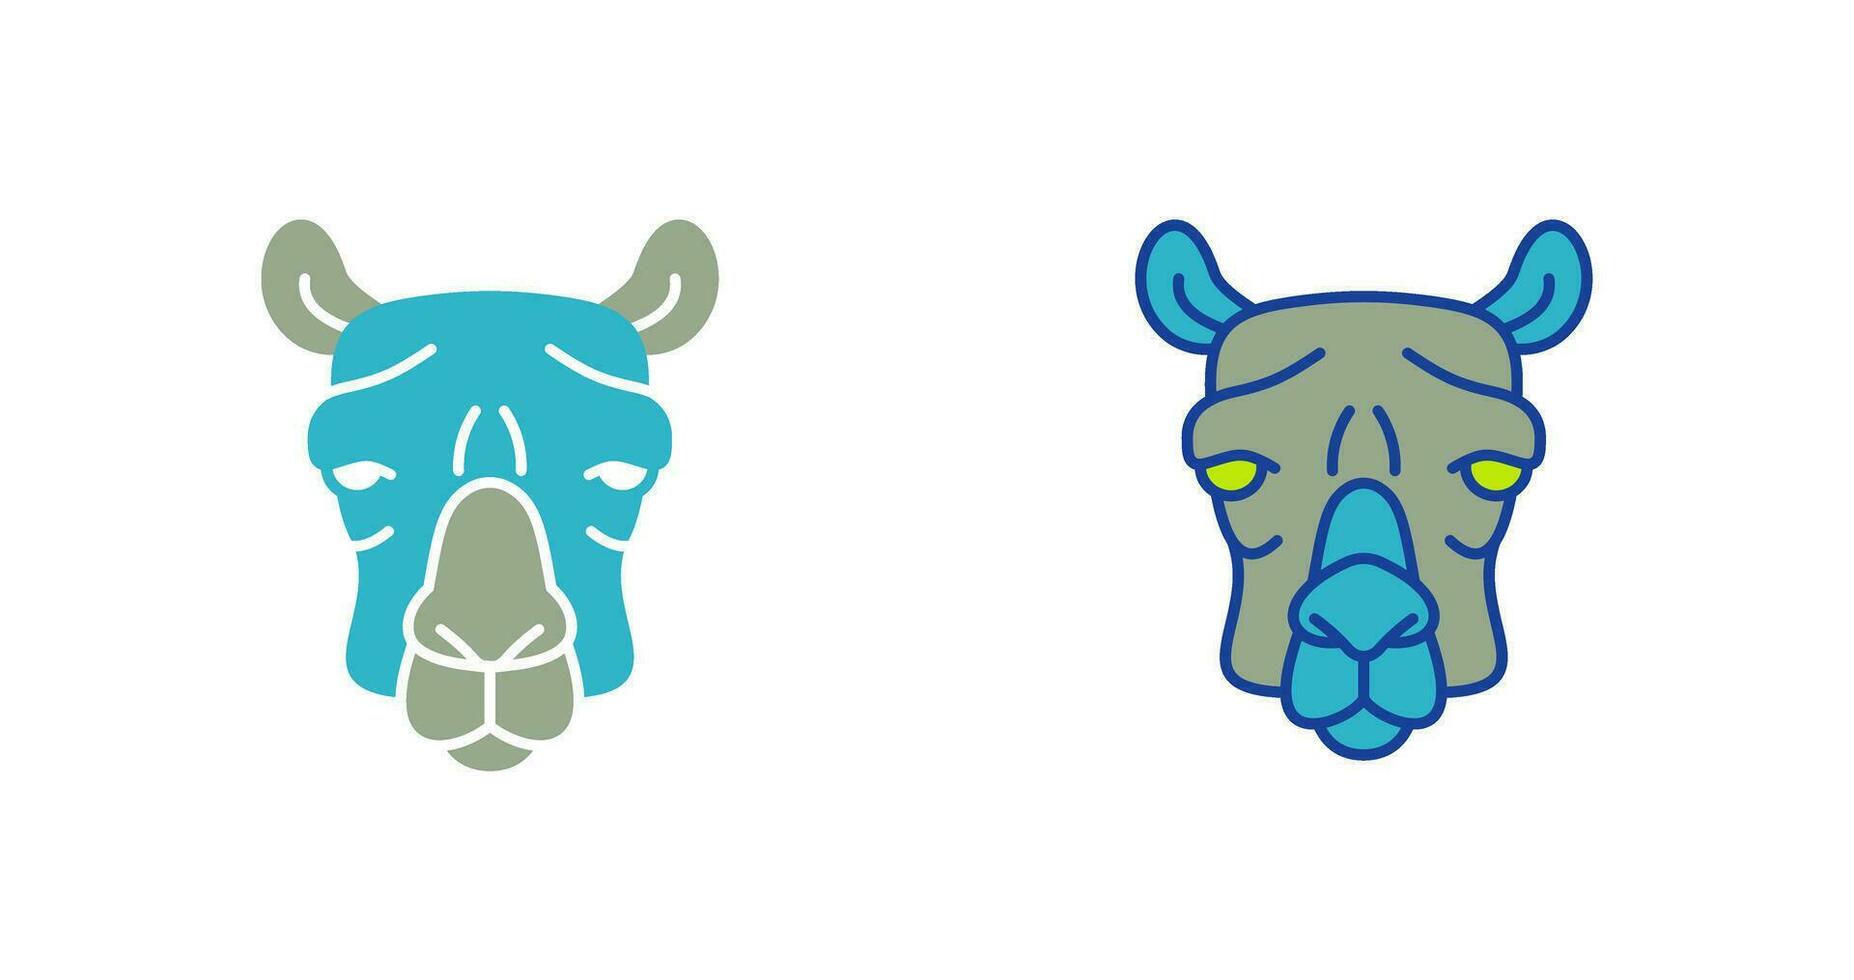 icône de vecteur de chameau